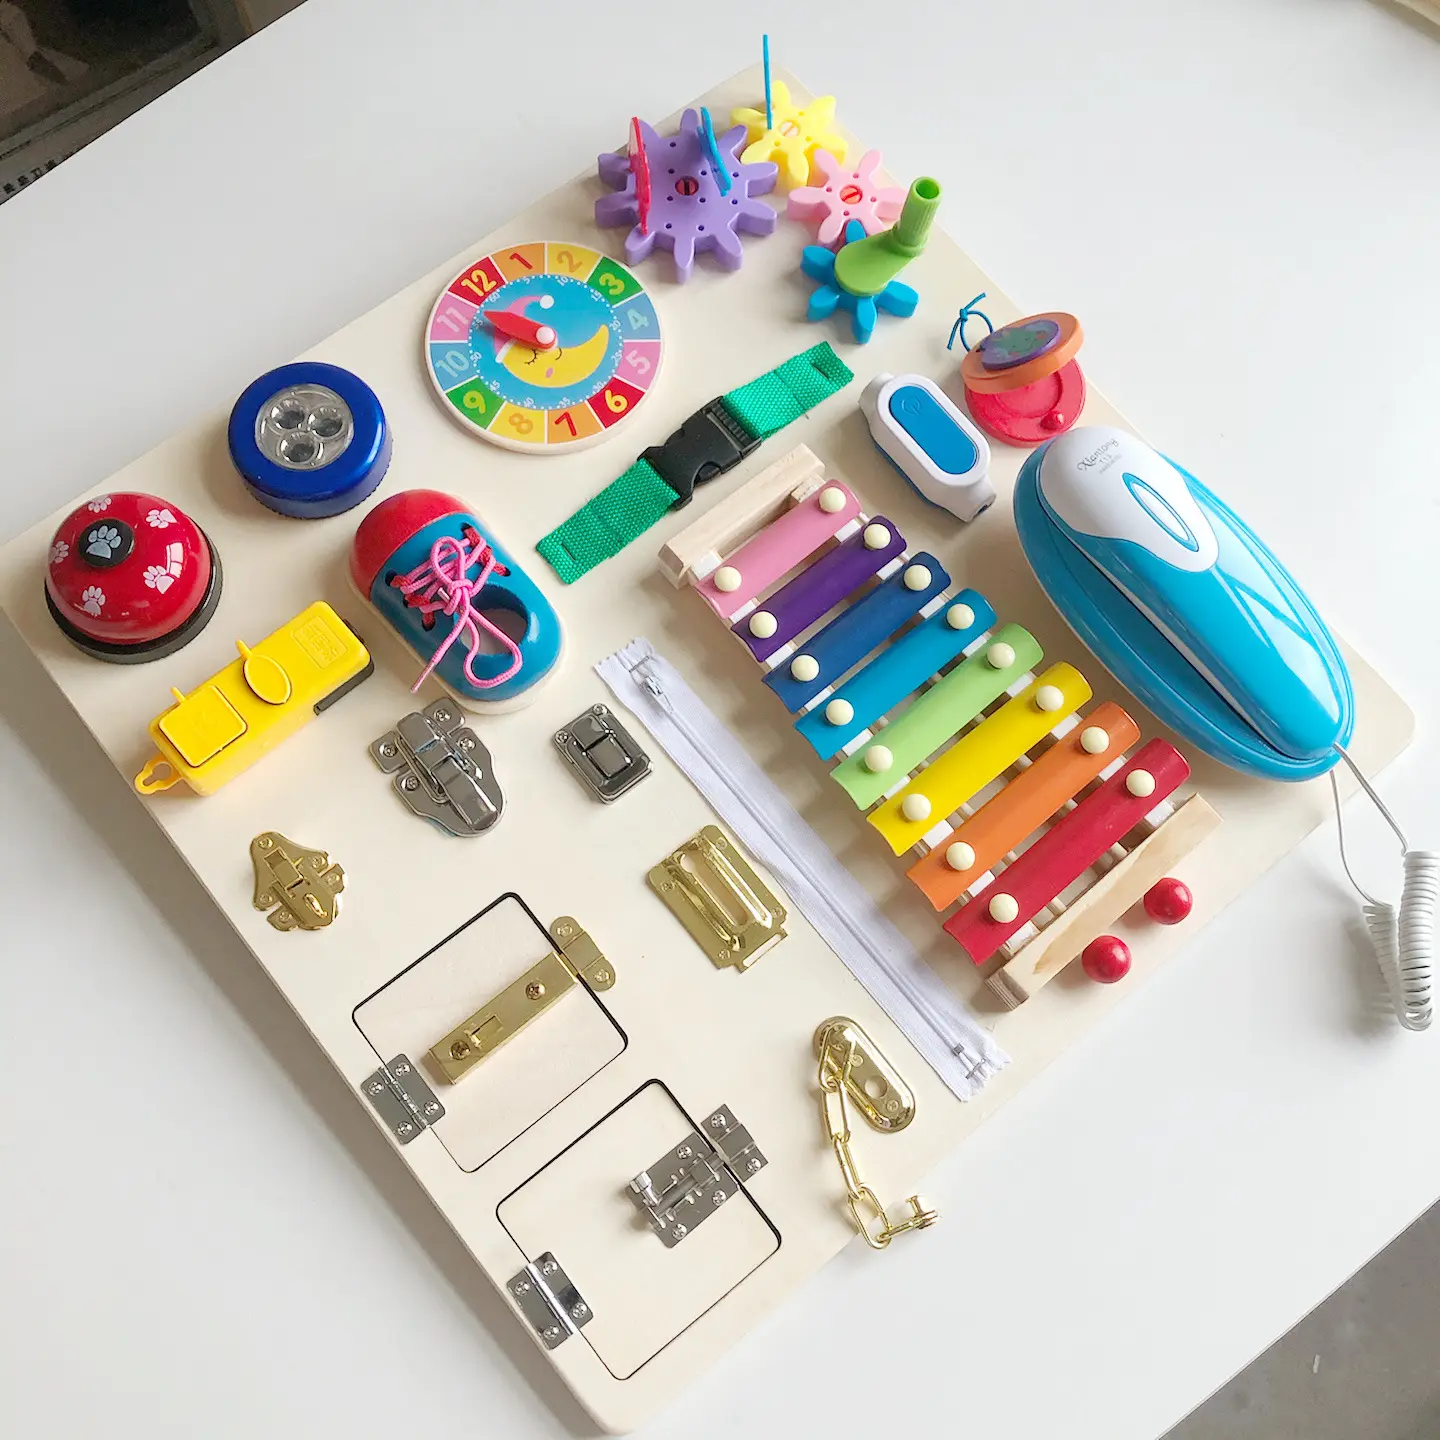 他の赤ちゃんのおもちゃ木製木琴忙しいボードChildrenのMontessori教育AIDS早期教育ロック解除のおもちゃベビーMontessori